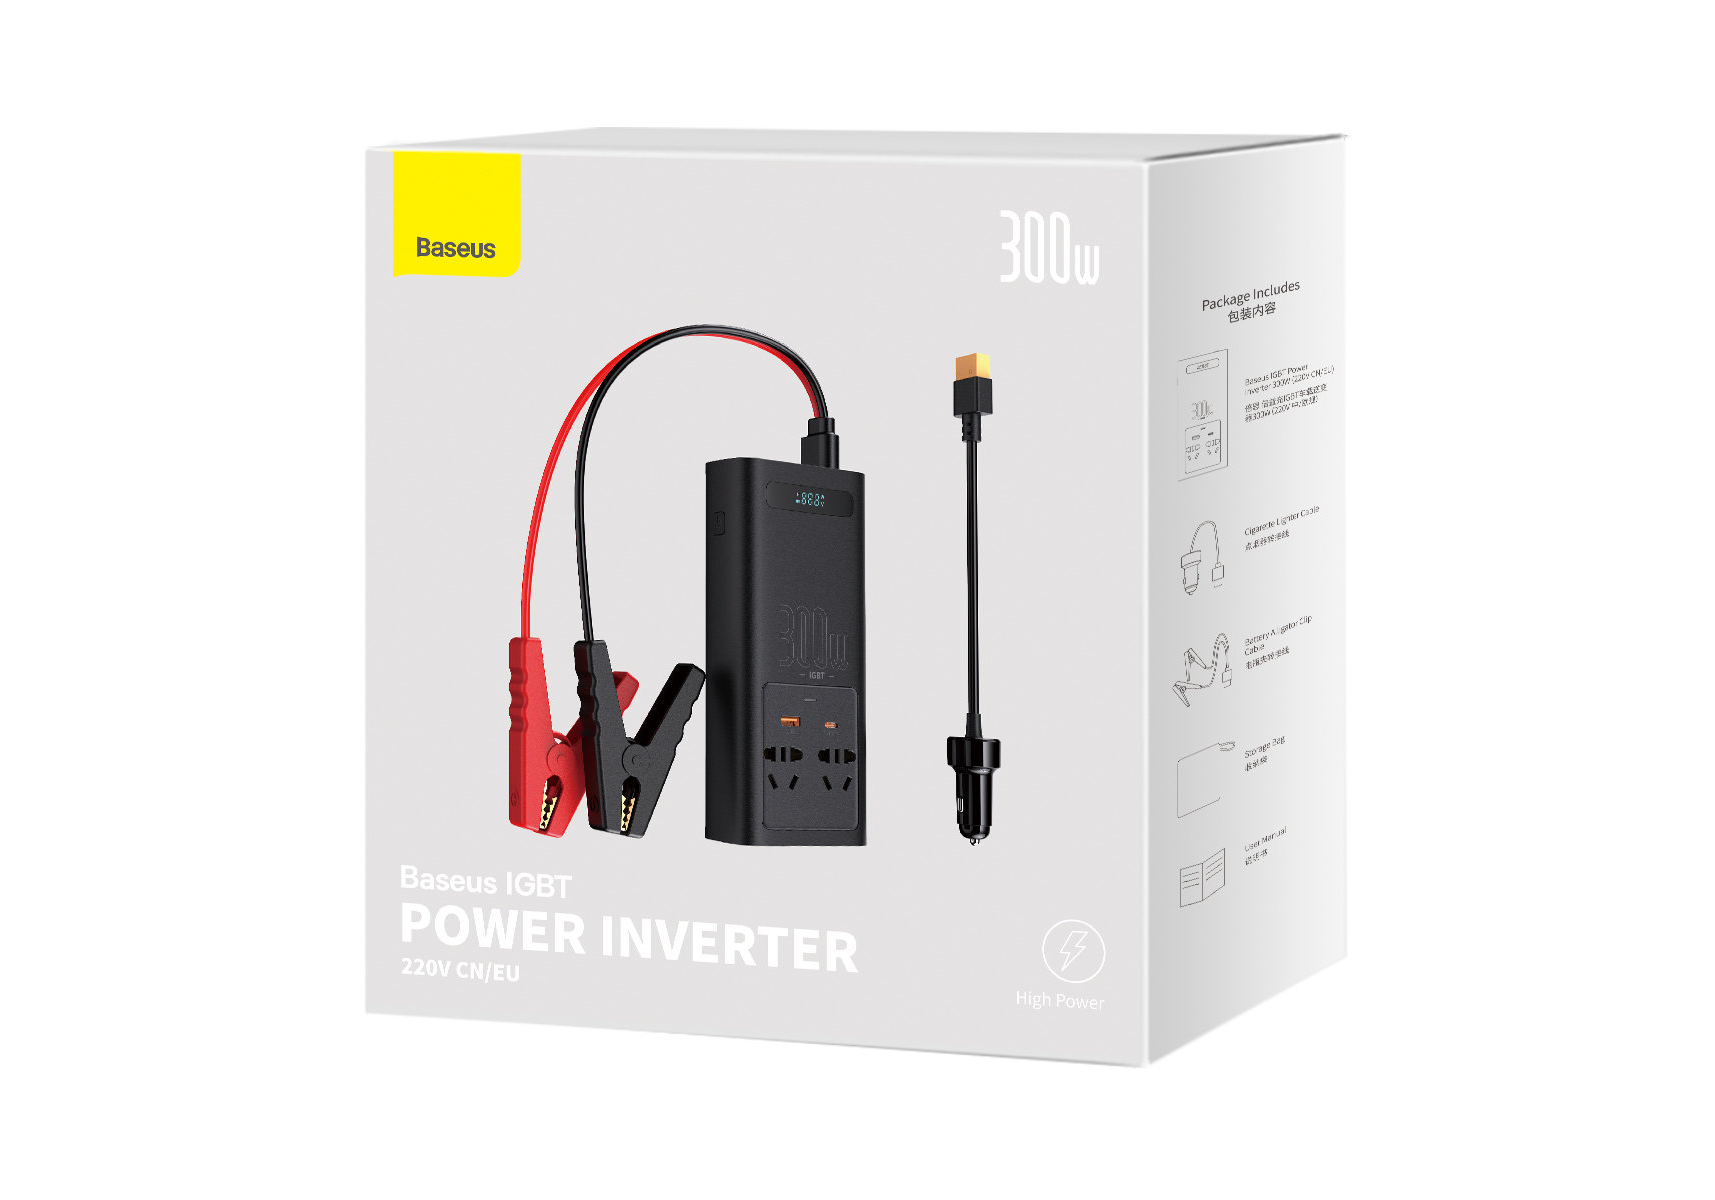 Автомобильный инвертор Baseus IGBT Power Inverter 300W (220V CN/EU) Black (CGNB010101)